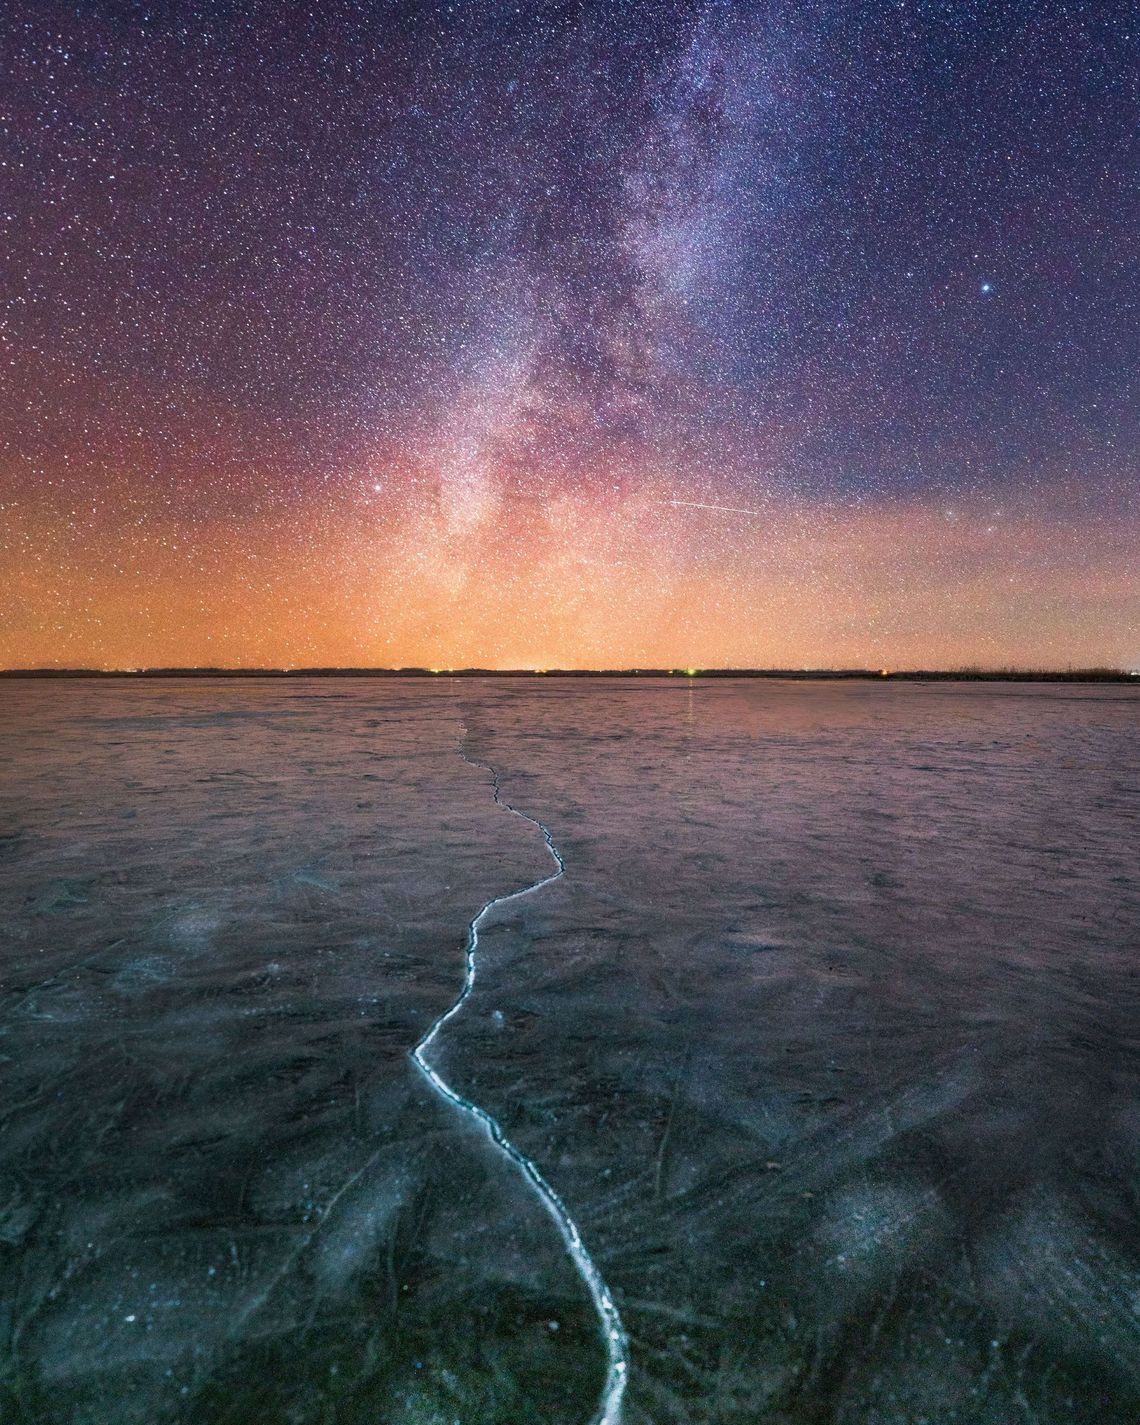 A sky of stars above a lake. Photo by Vincent Ledvina on Unsplash